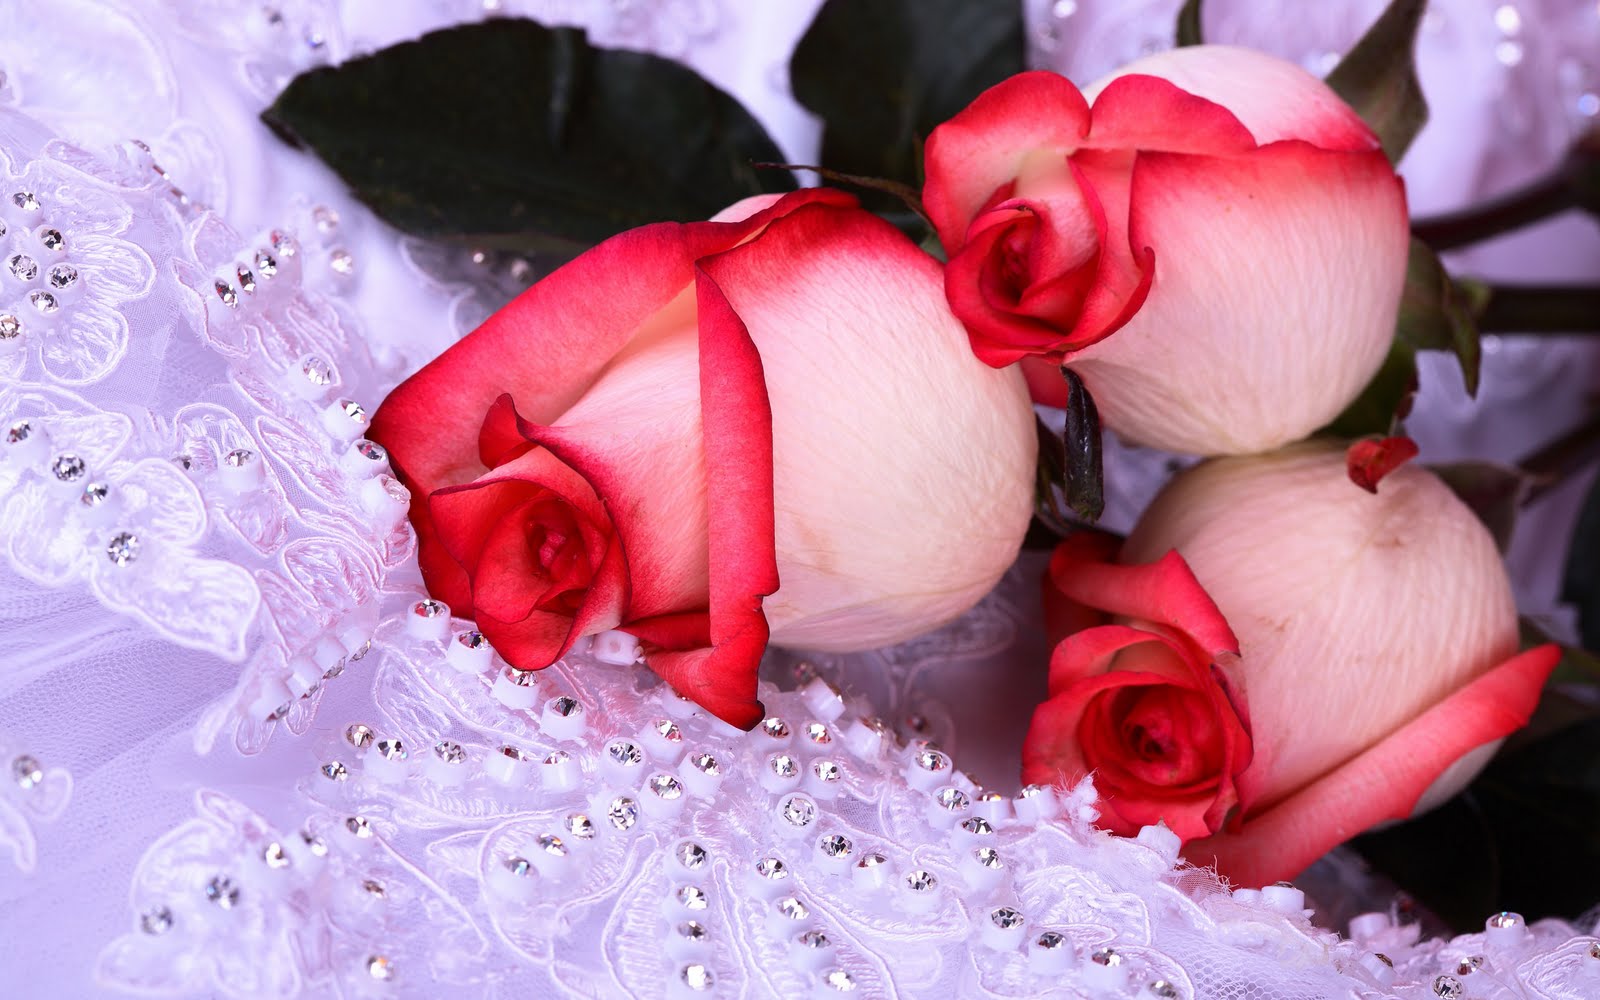 Te regalo una rosa - Página 2 Www.BancodeImagenesGratuitas.com%2B-Flores-4